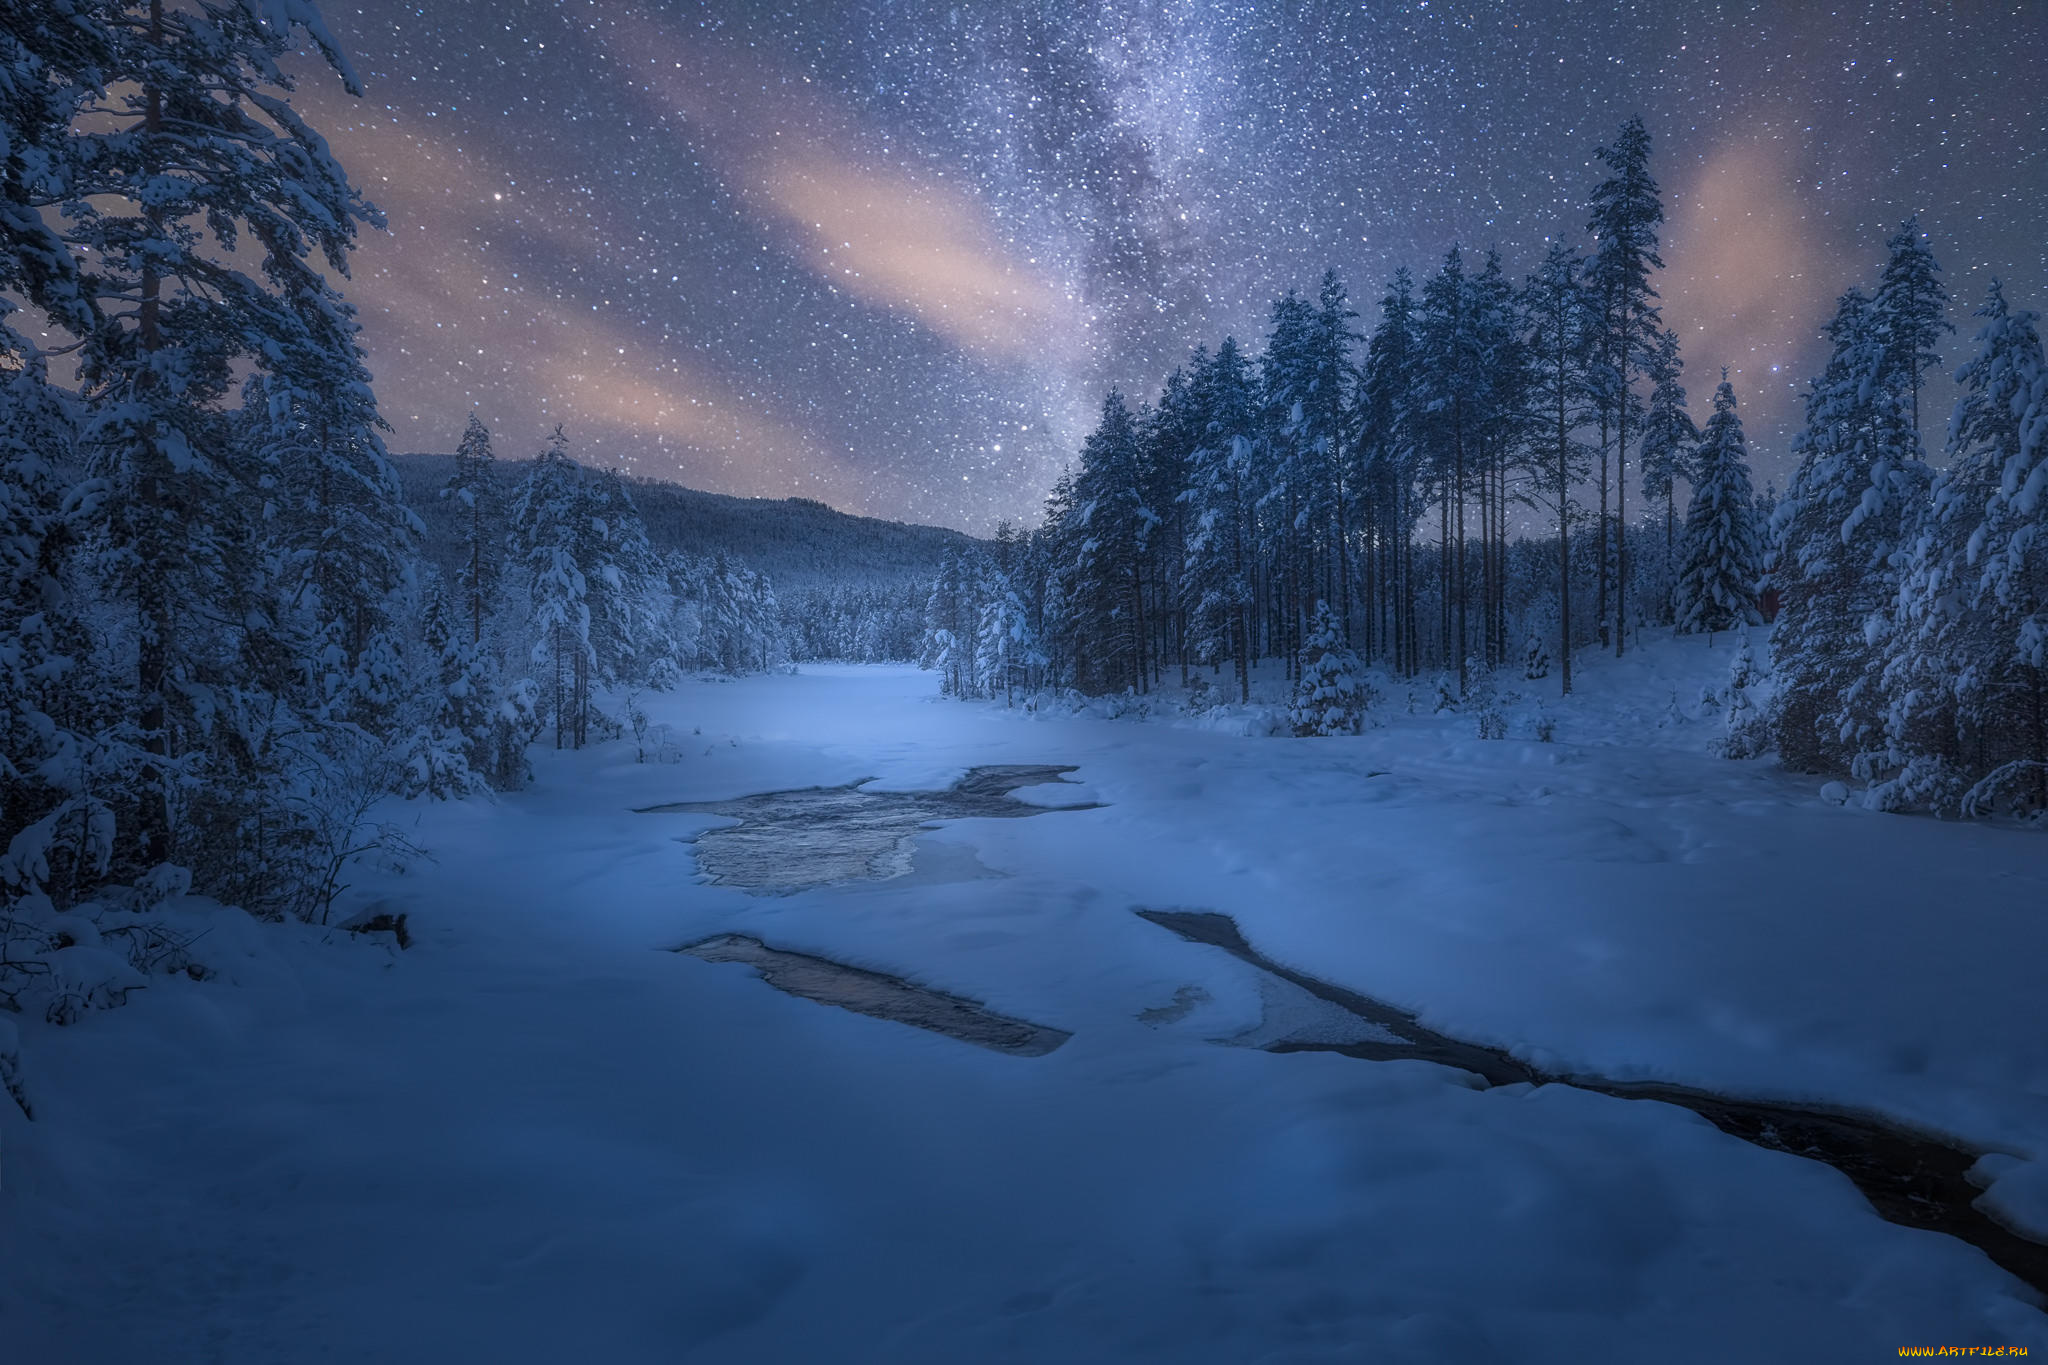 Наступает ночь темнеет. Зимняя ночь. Зимний лес ночью. Зимний ночной пейзаж. Снежный лес ночью.